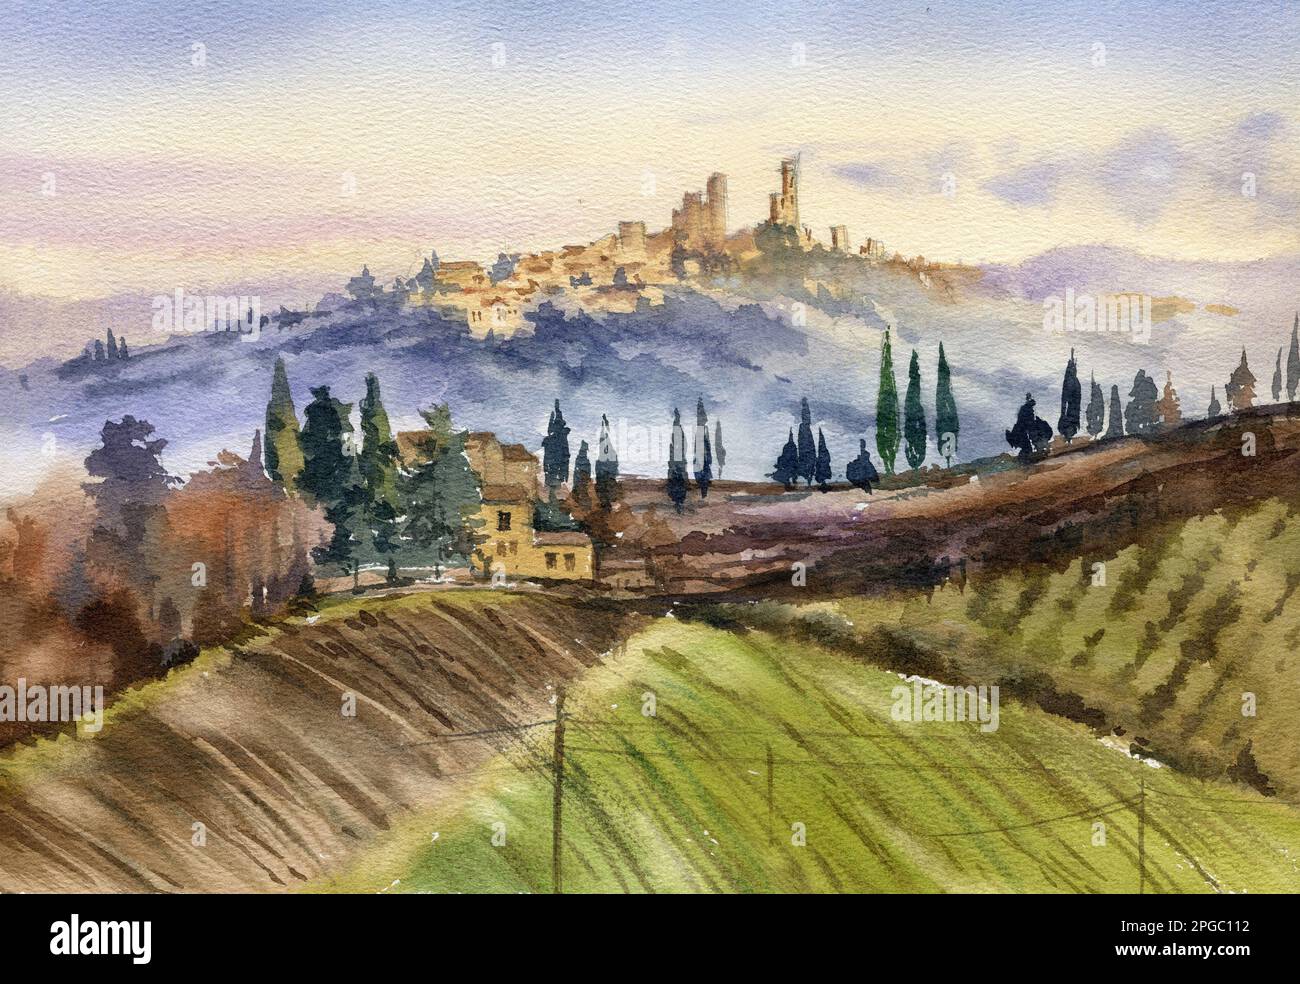 Paysage aquarelle de l'Italie, dessin à la main, San Jiminiano. Soirée en Italie. Coucher de soleil, ciel nuageux Banque D'Images